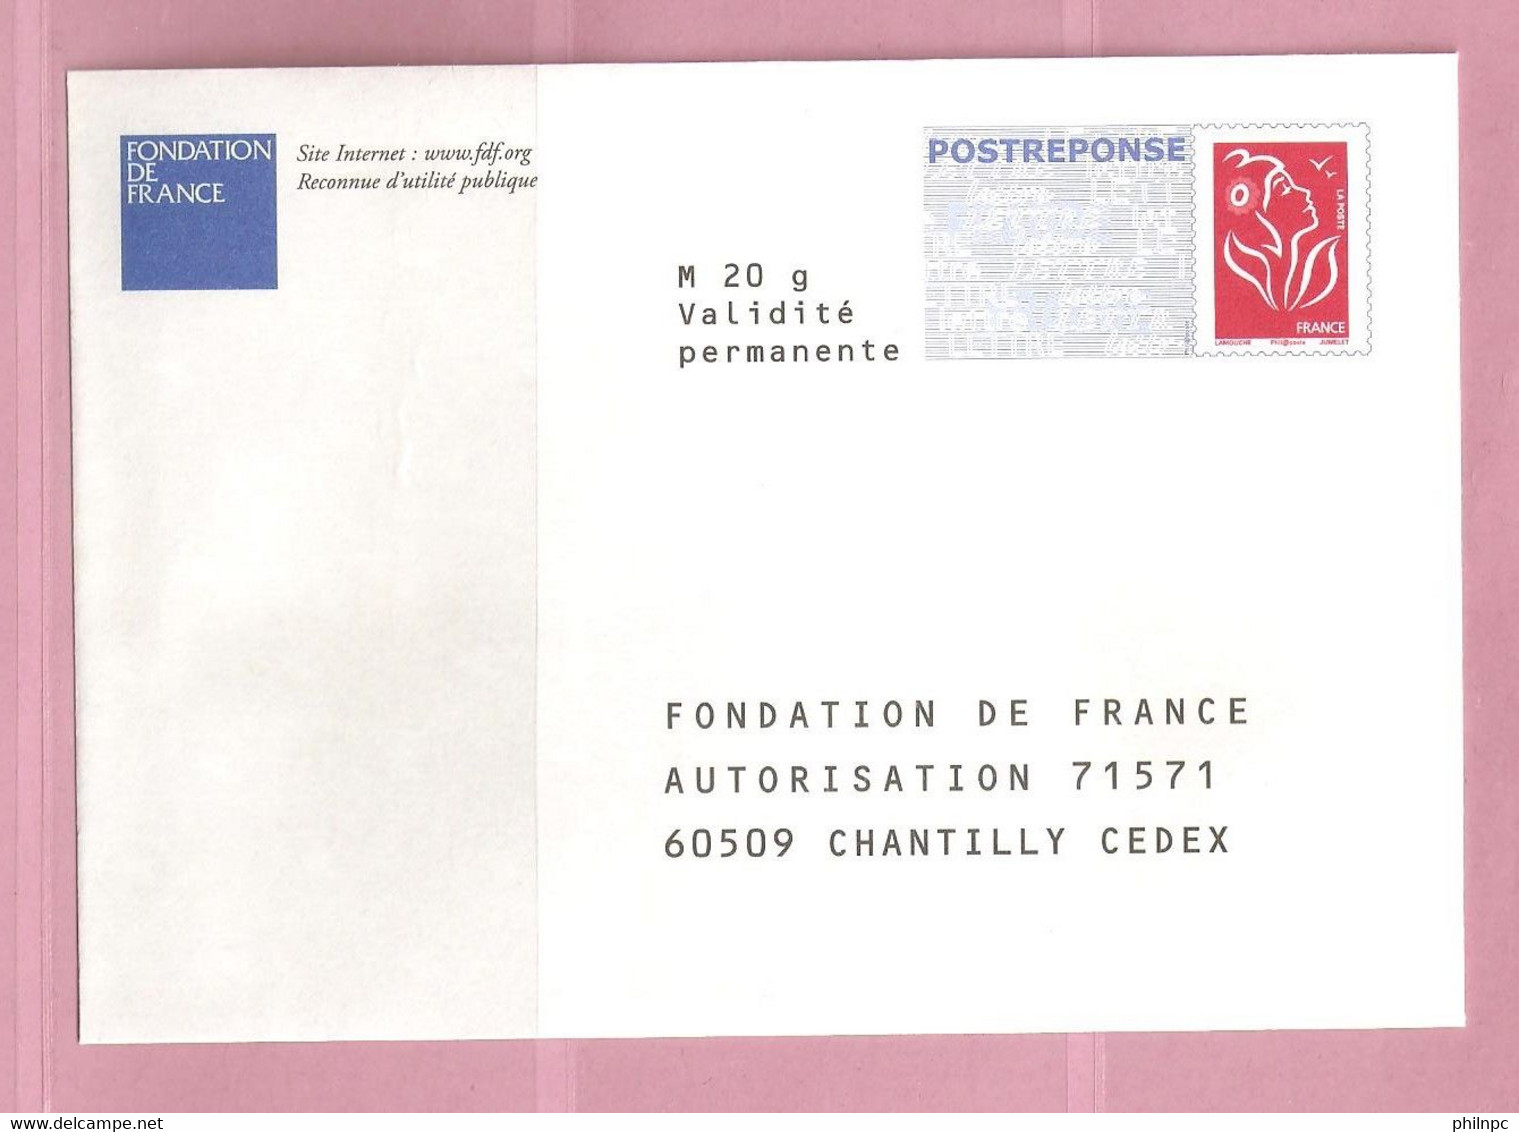 France, Prêt à Poster Réponse, 3734A, Postréponse, Fondation De France, Marianne De Lamouche - Prêts-à-poster: Réponse /Lamouche